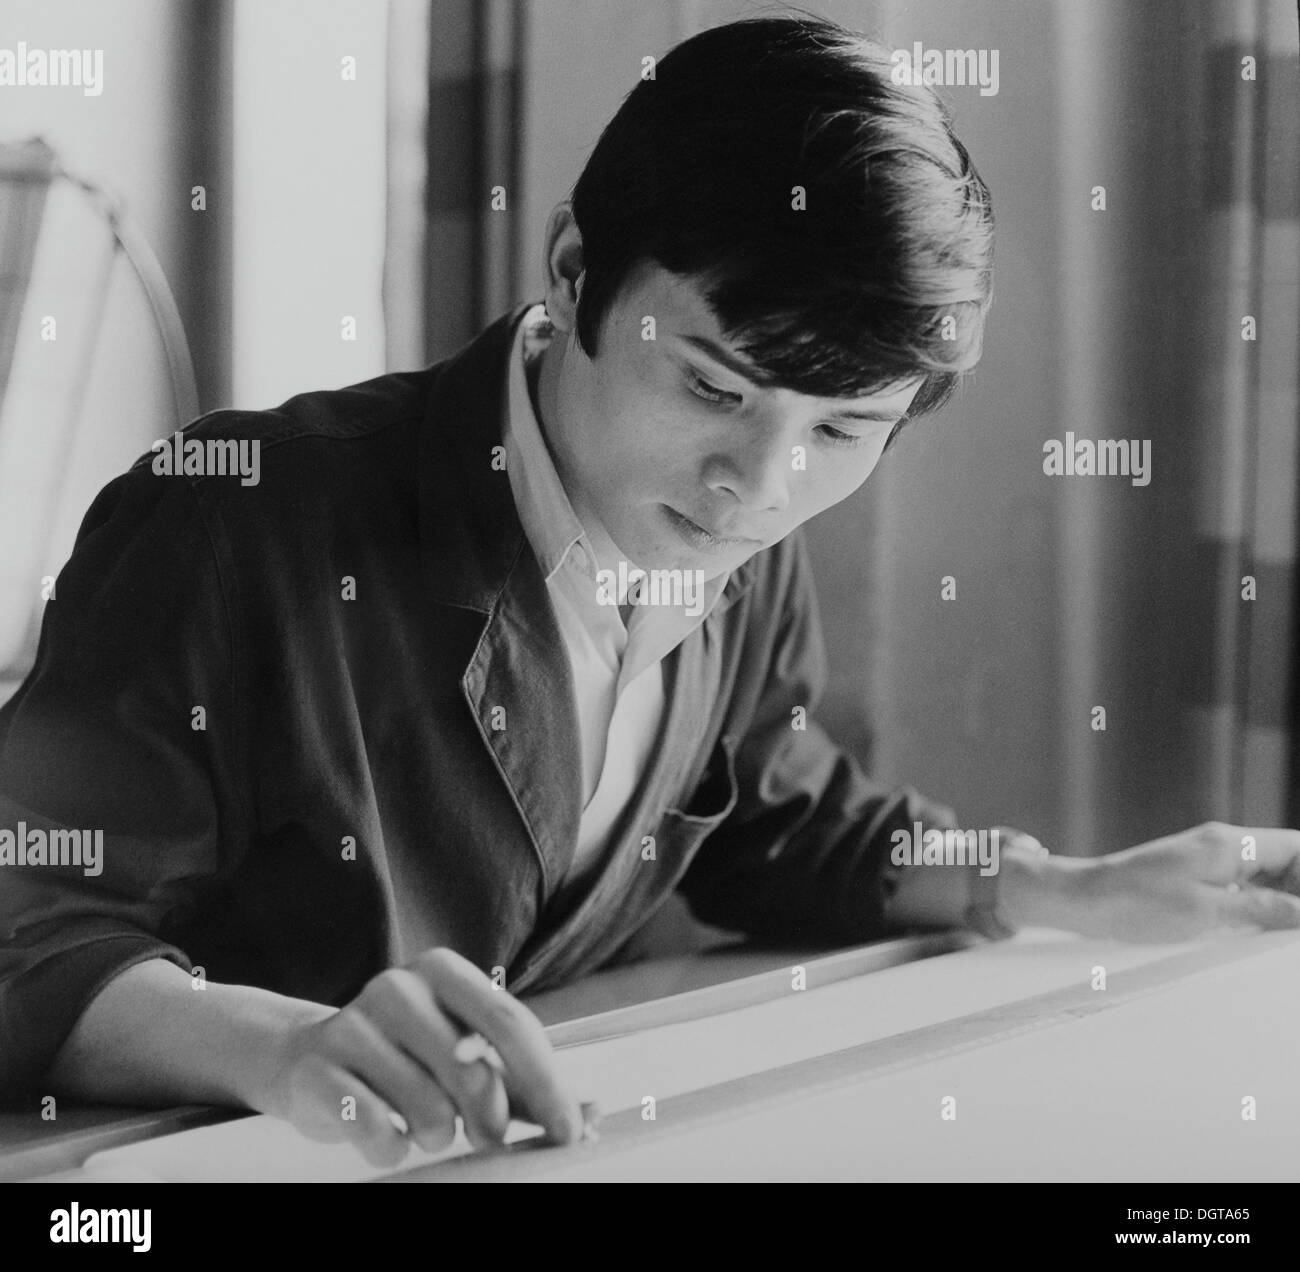 Il vietnamita apprendista in un impianto di stampa, circa 1975, Lipsia, REPUBBLICA DEMOCRATICA TEDESCA, la Germania orientale, Europa Foto Stock